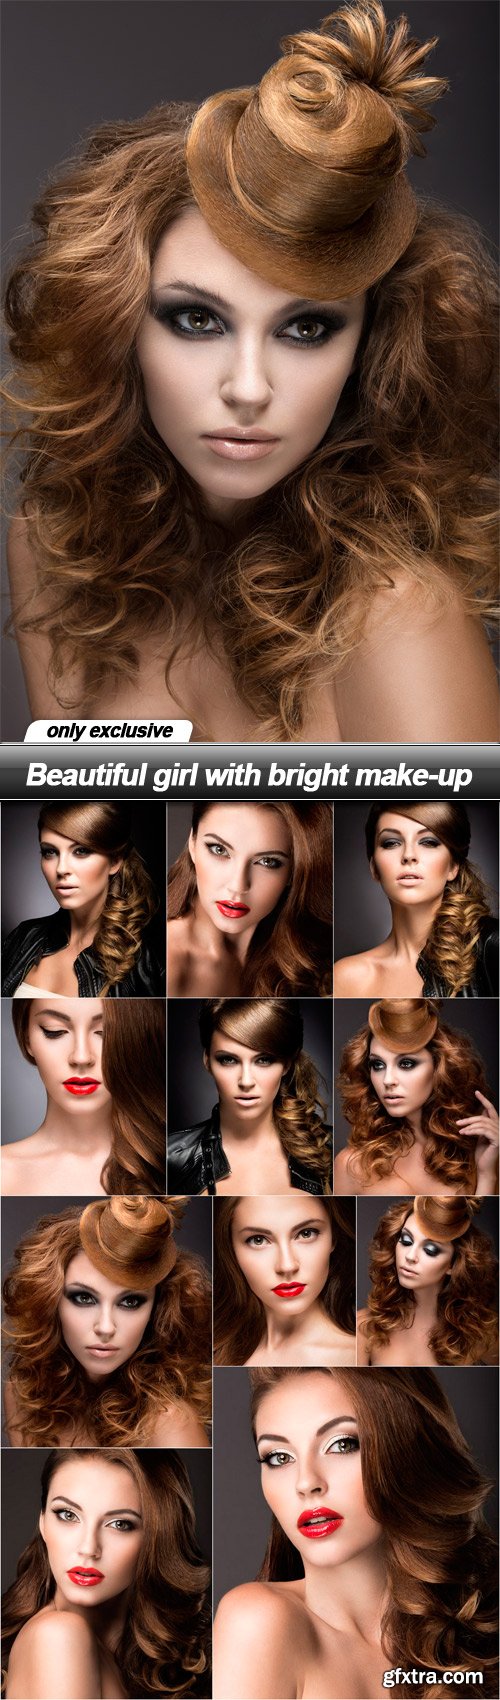 Beautiful girl with bright make-up - 11 UHQ JPEG